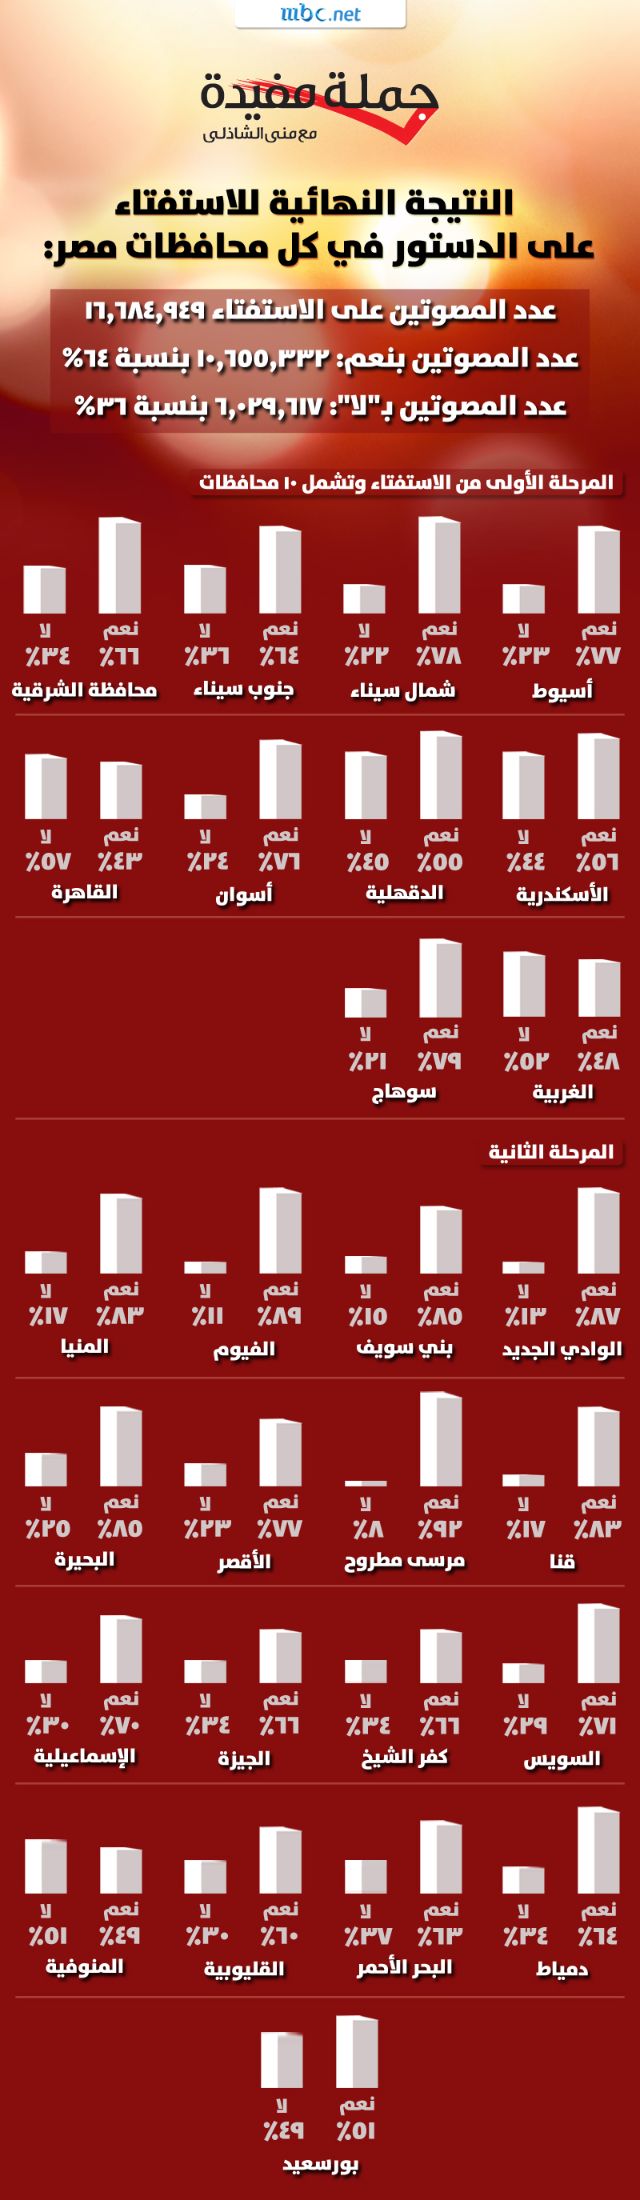 النتيجة النهائية على استفتاء الدستور - النتيجة النهائية للاستفتاء على الدستور في كل محافظات مصر - Egyptian constitution